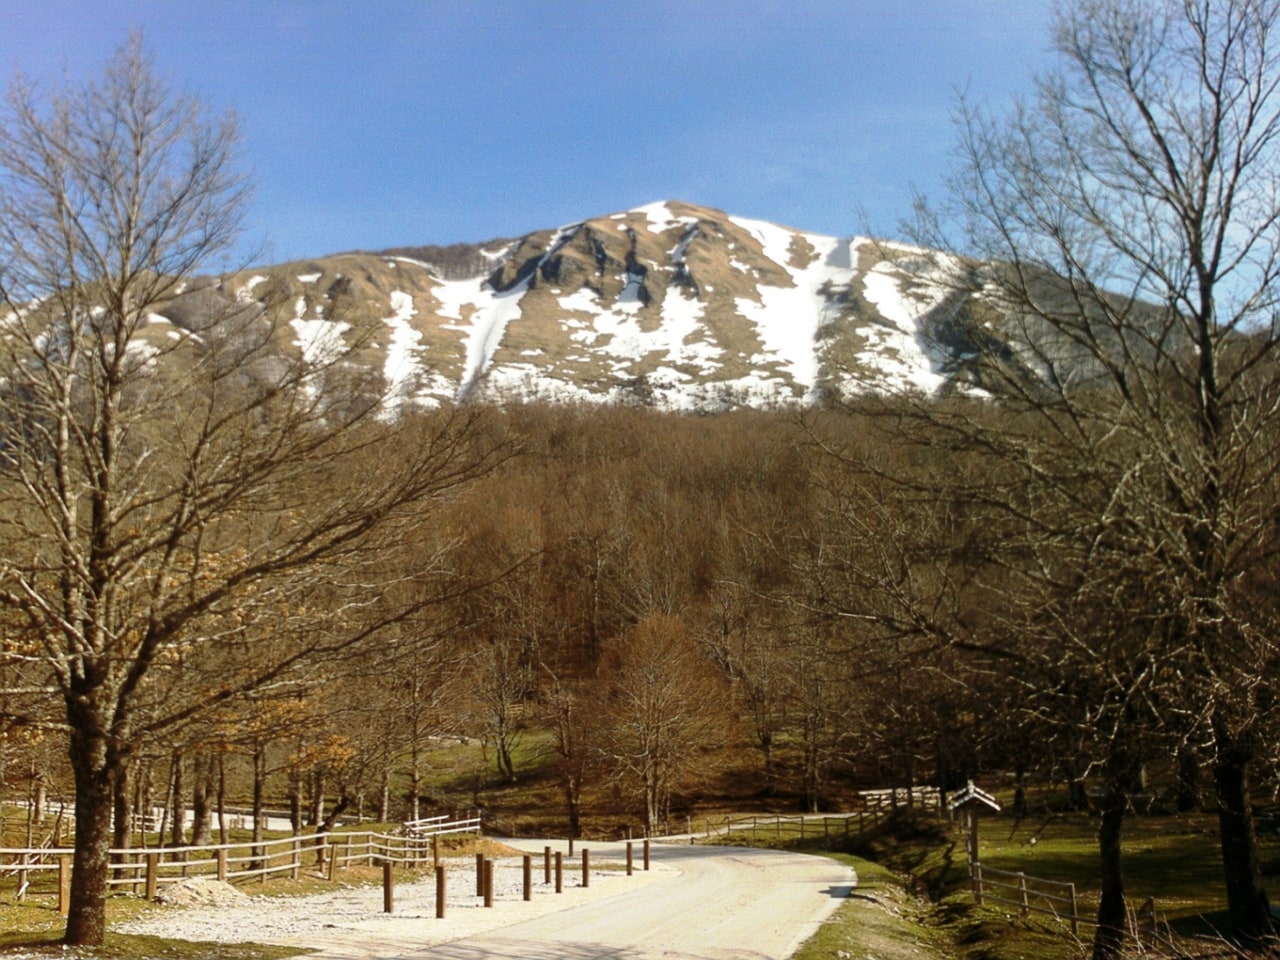 Parc national de l'Apennin lucanien-Val d'Agri-Lagonegrese, Italie